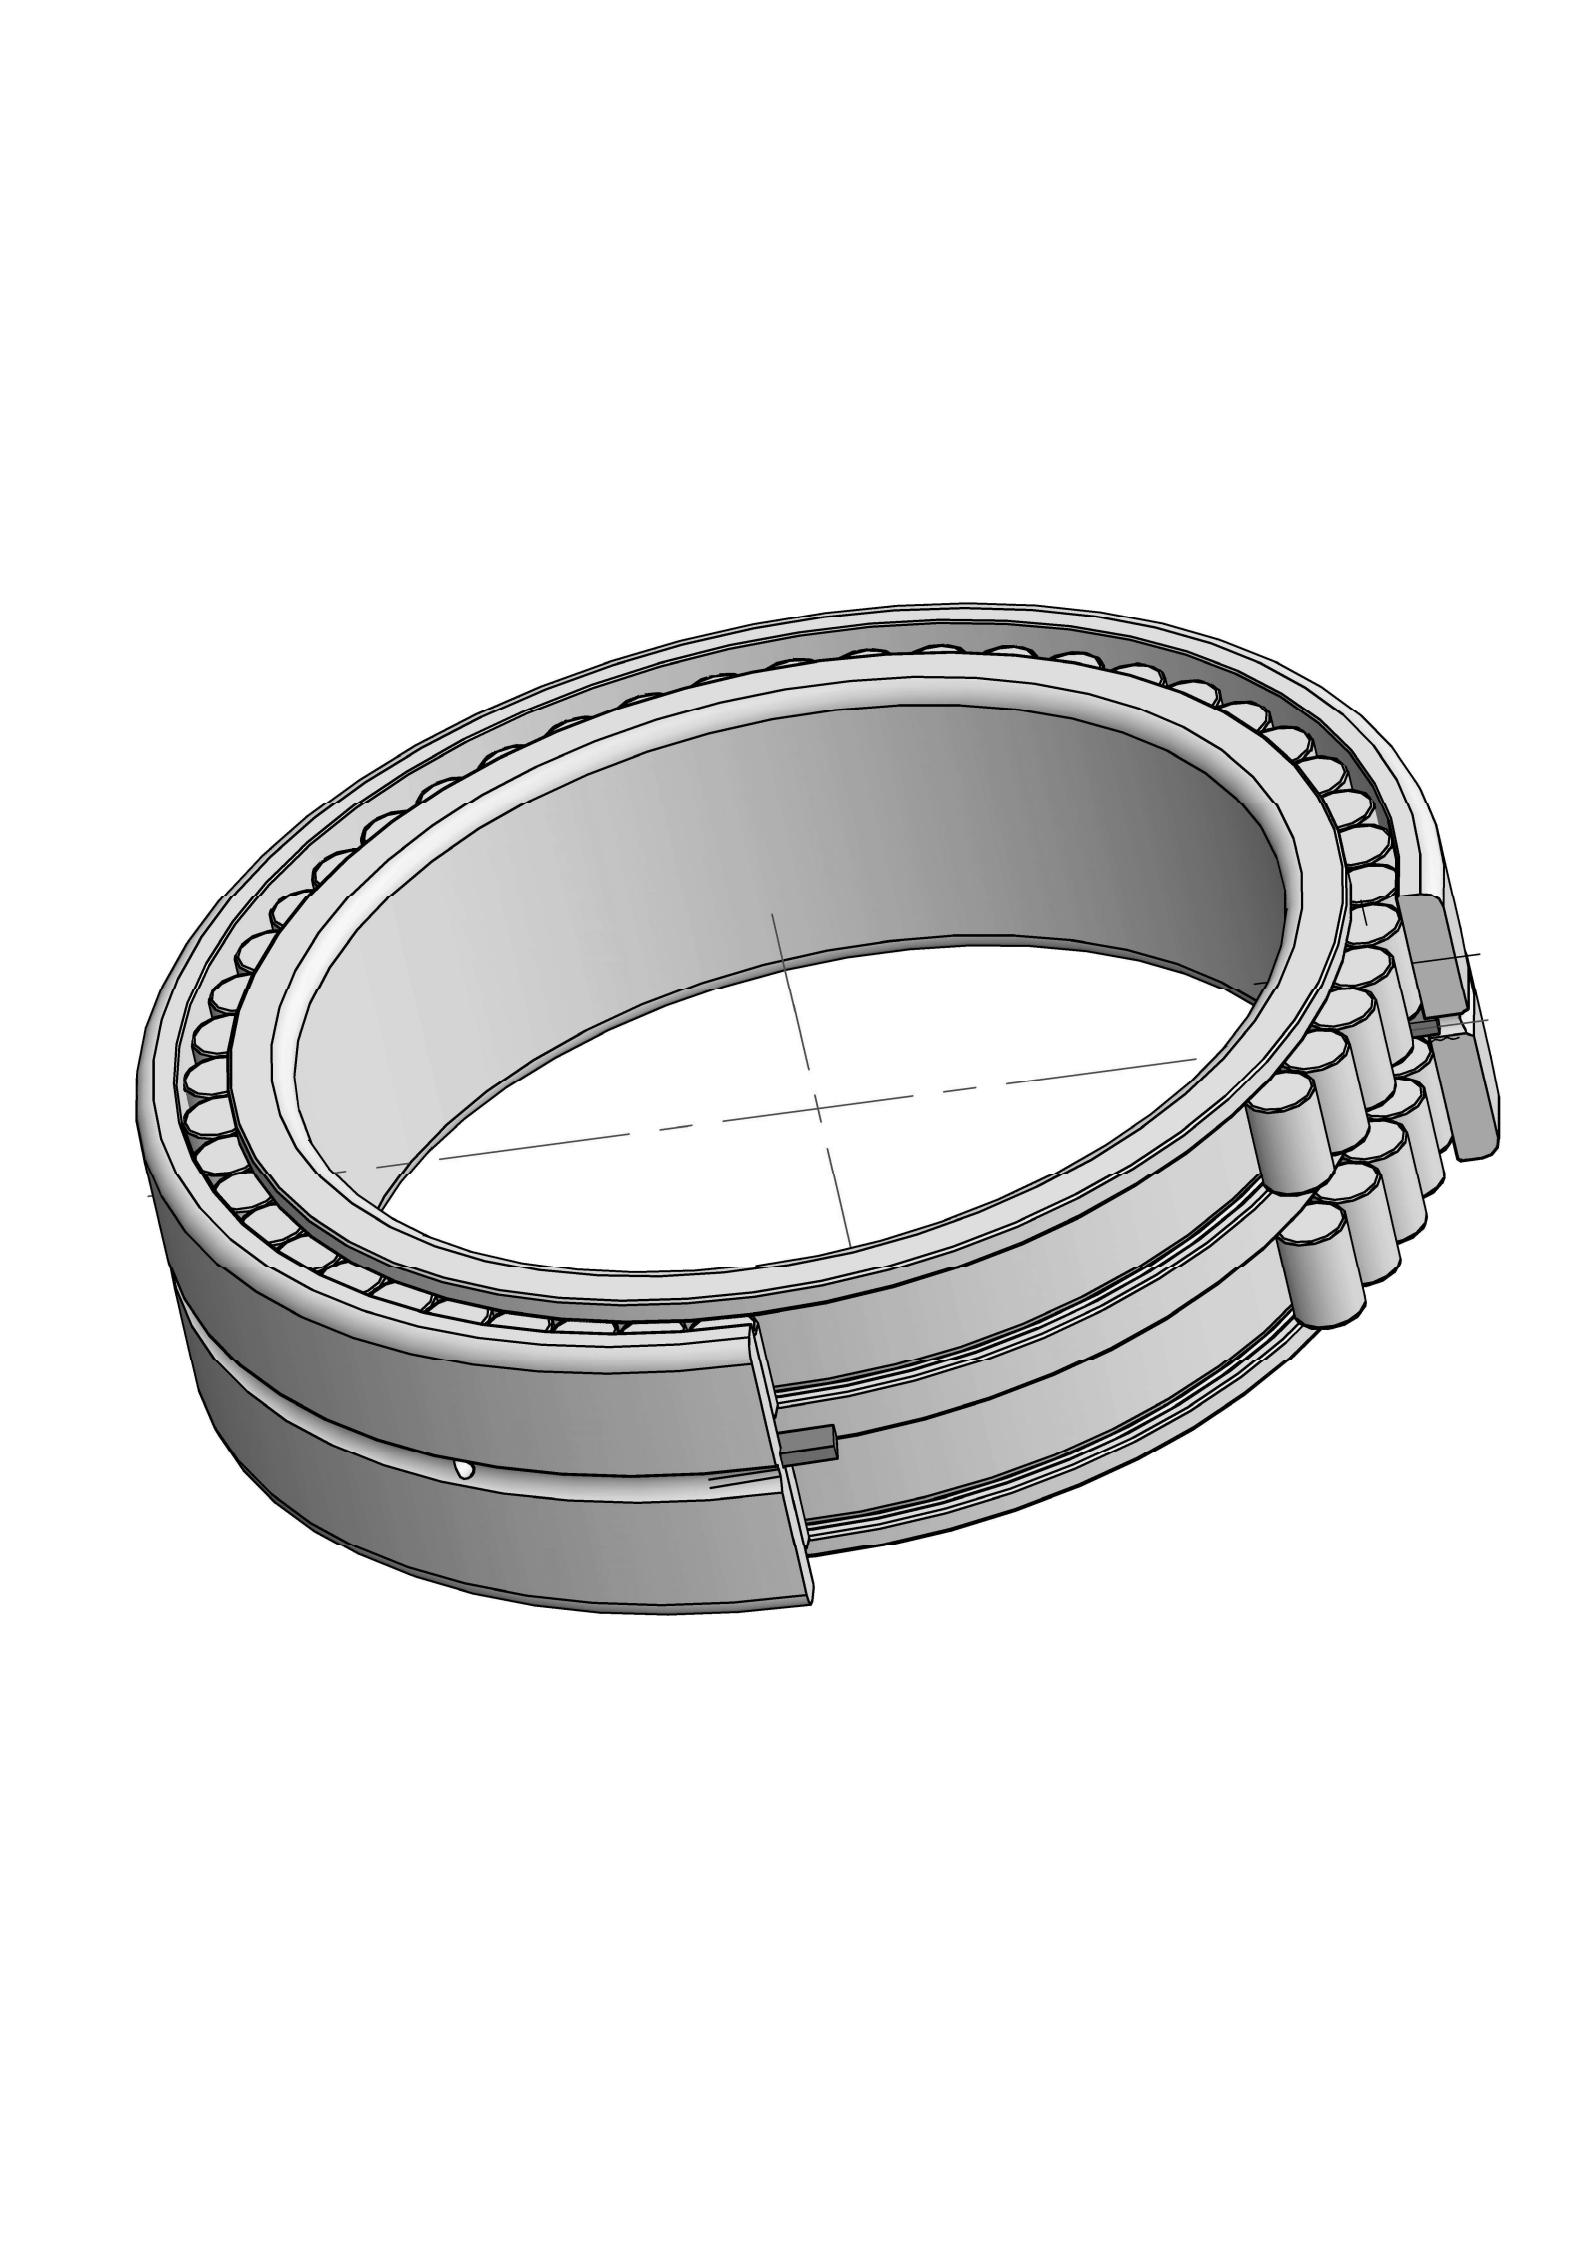 SL024916 Ob chav kab puv ntxiv cylindrical cov menyuam bearings